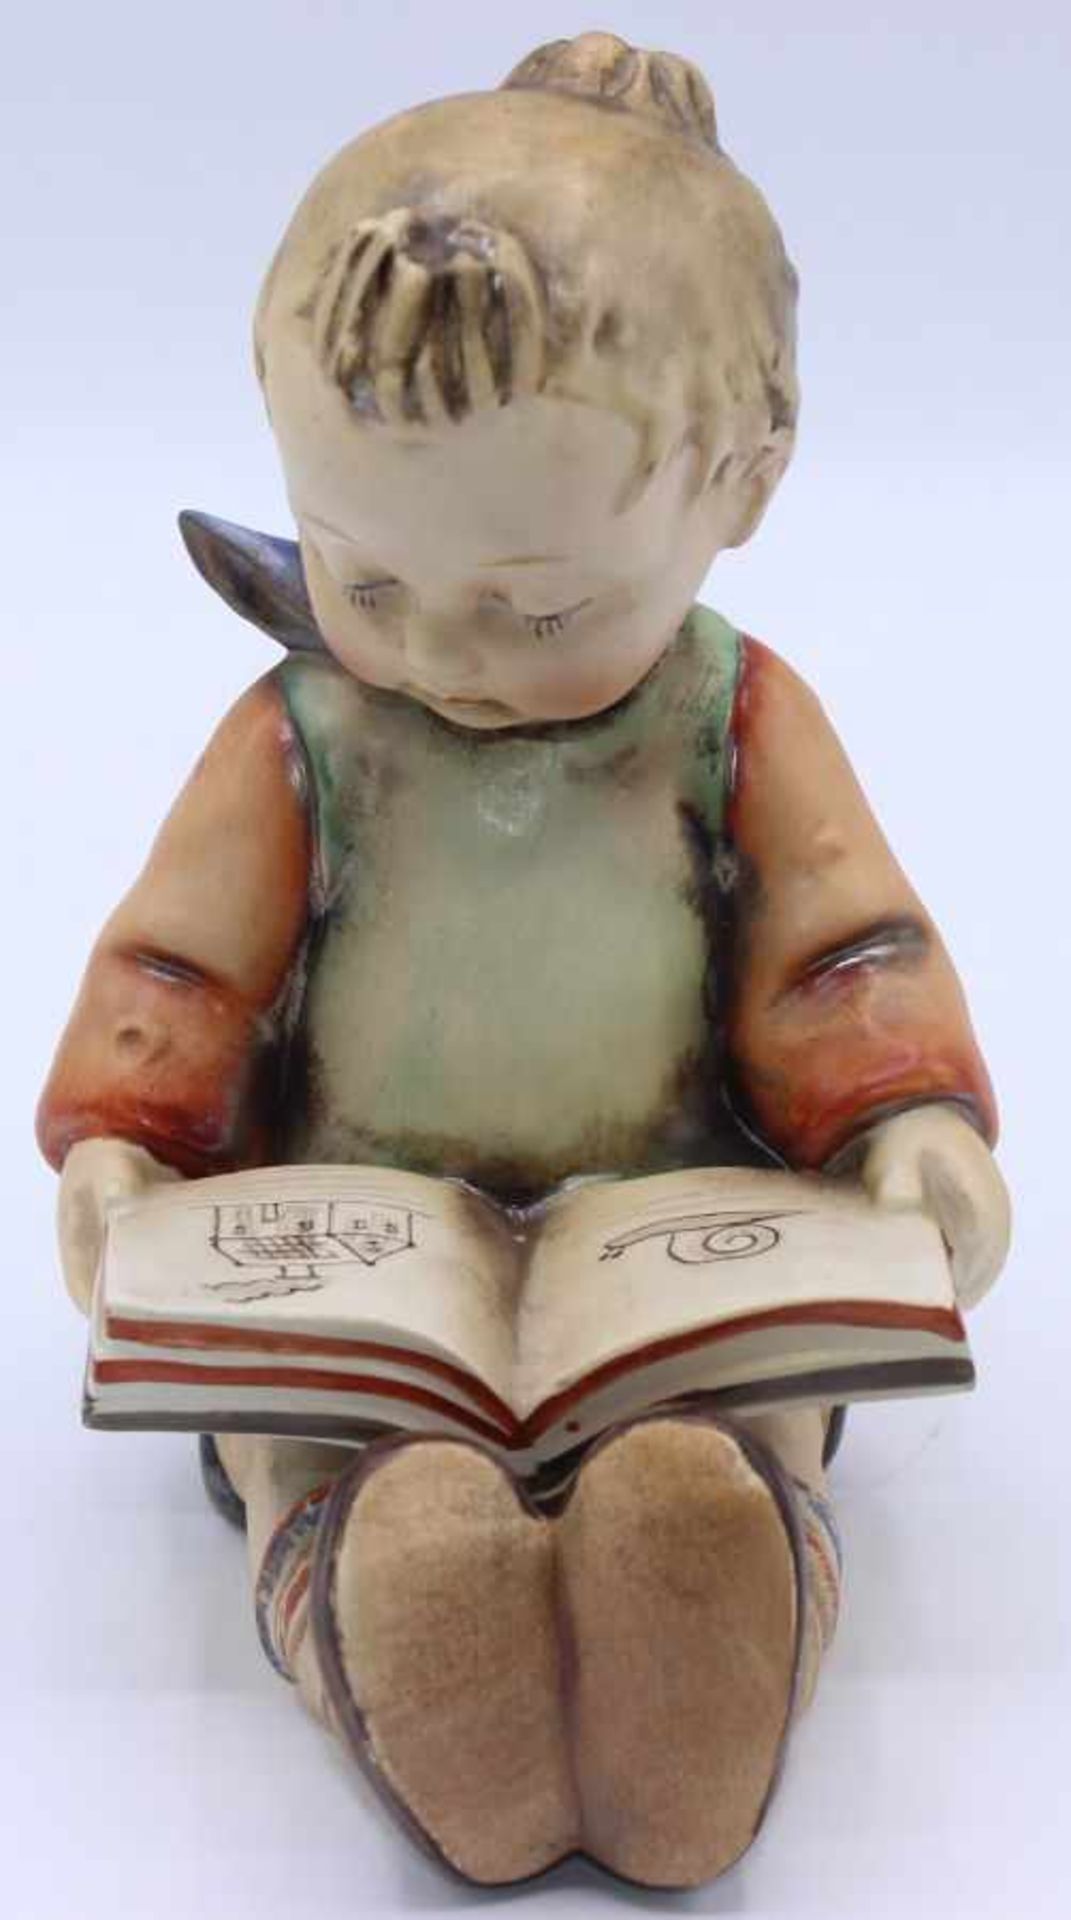 Hummel Figur - Entwurf Reinhold Unger " Bücherwurm - Junge ", Marke 1935-1949, hier älteres Modell